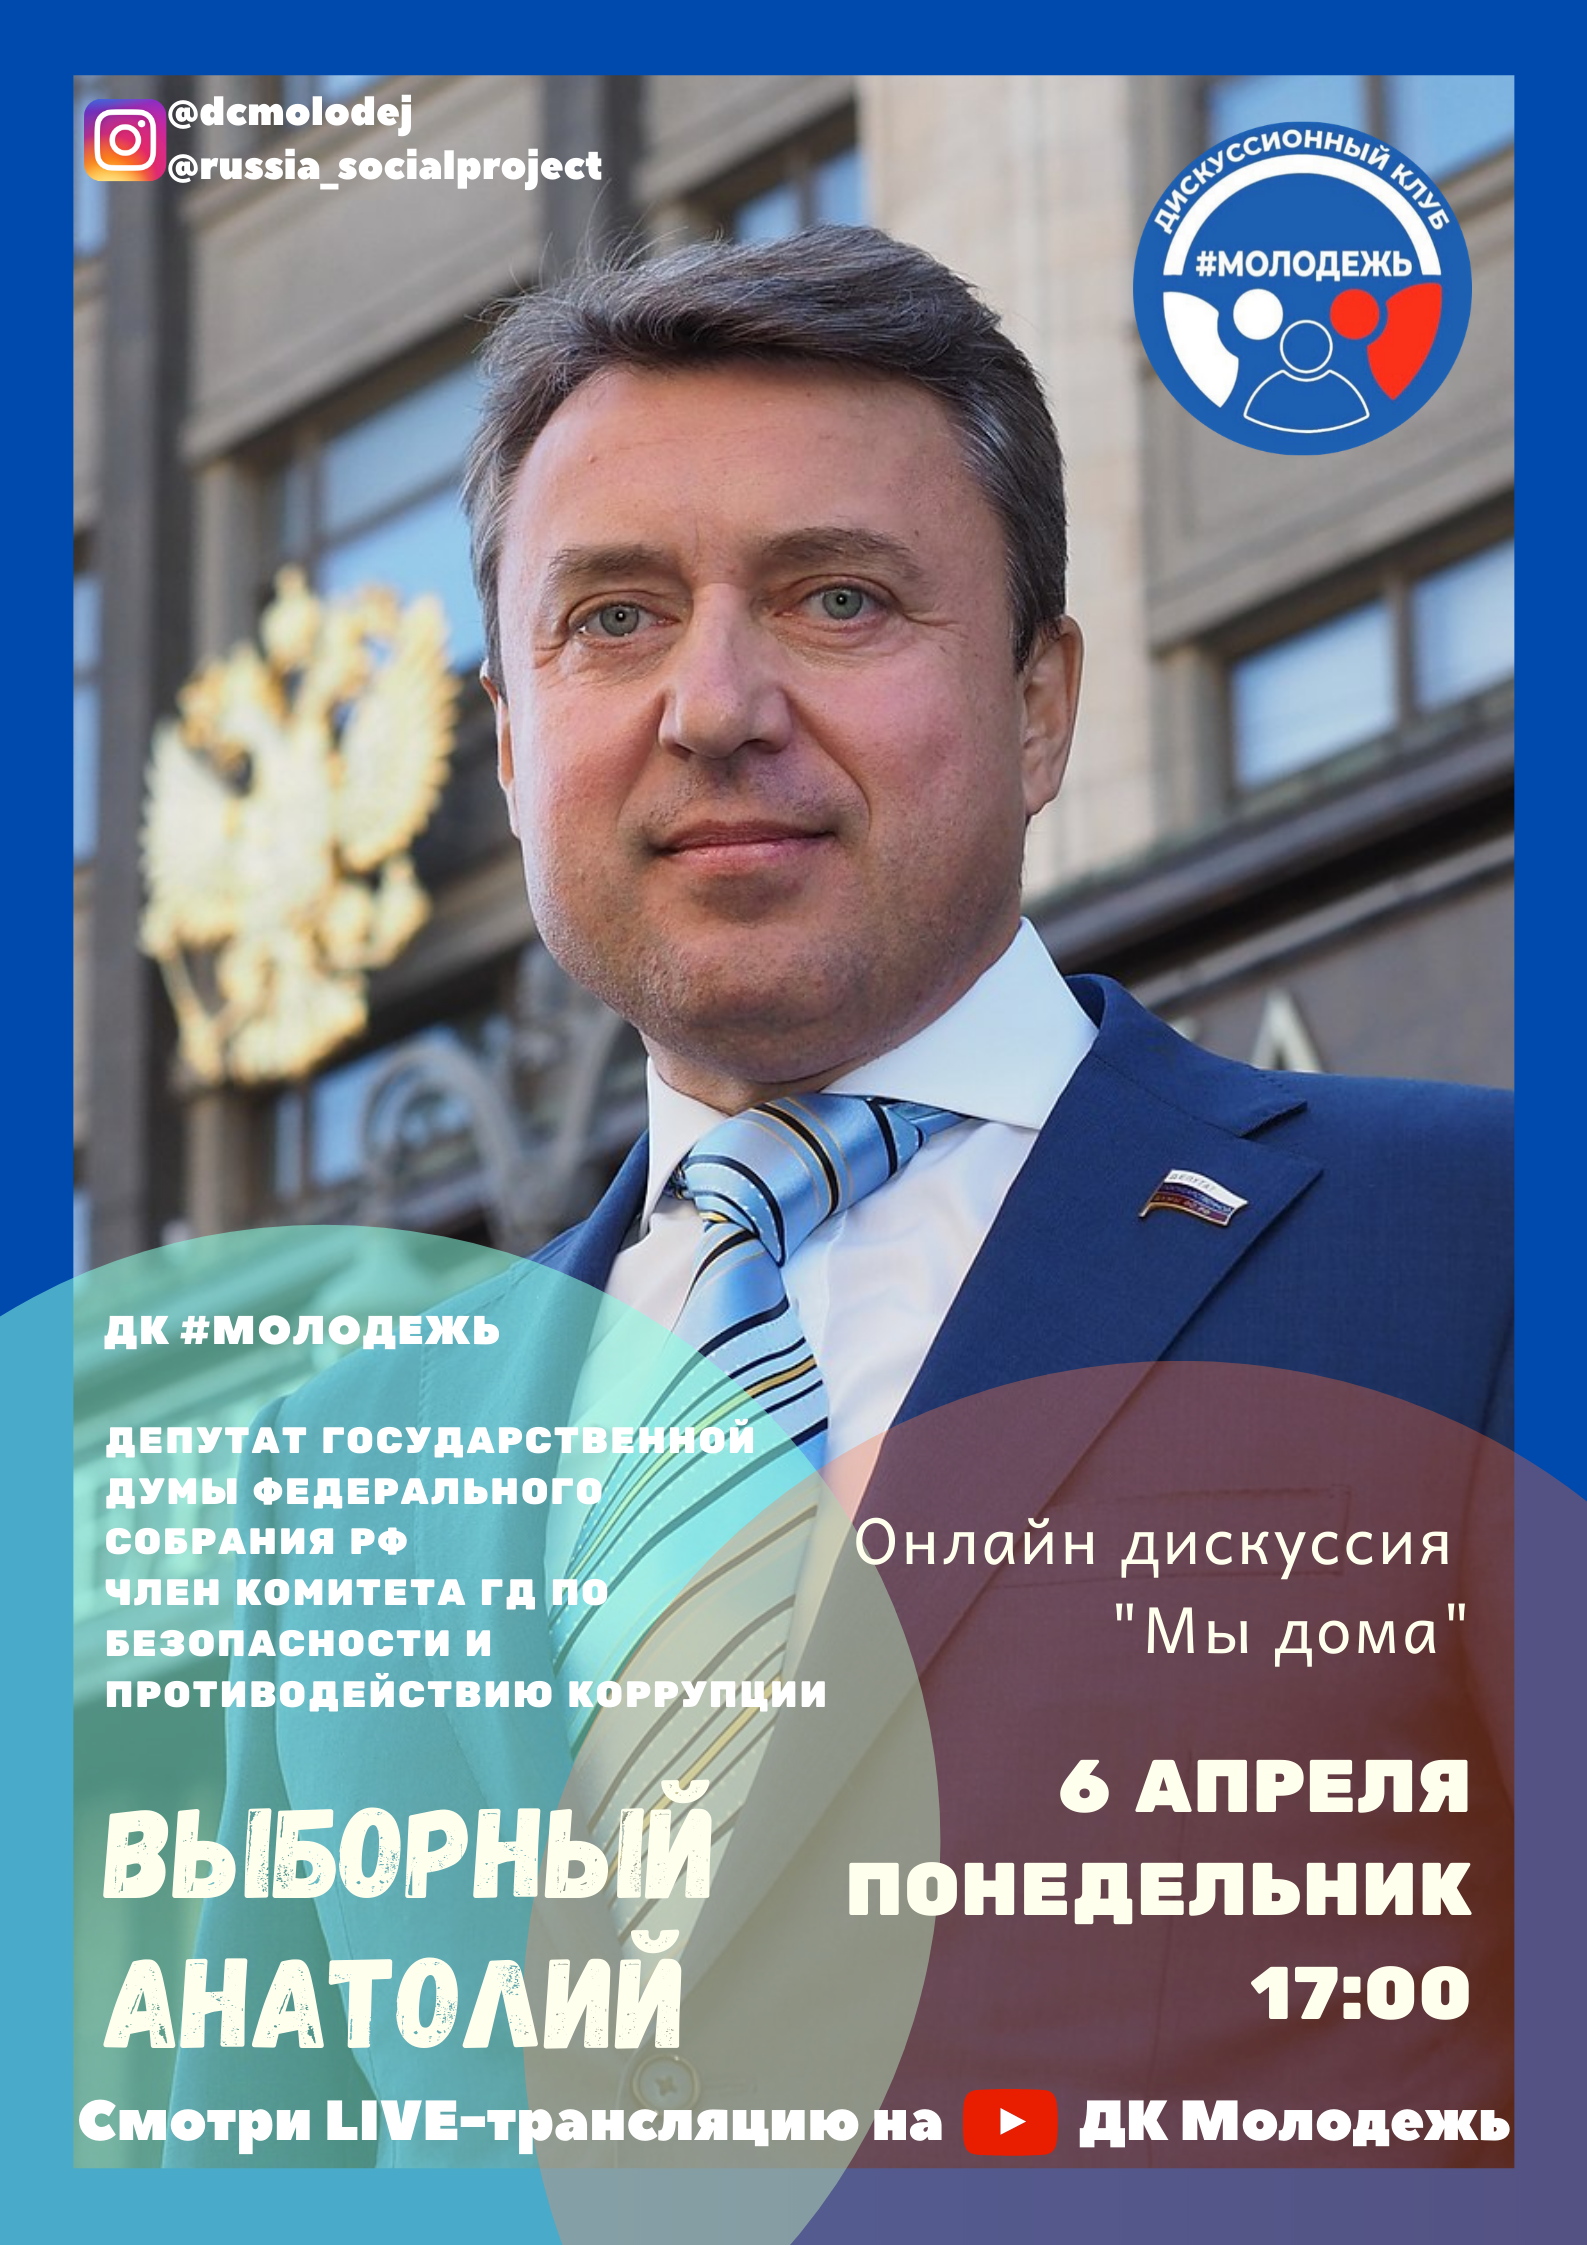 Первая онлайн-дискуссия ДК #Молодёжь c Выборным Анатолием Борисовичем 